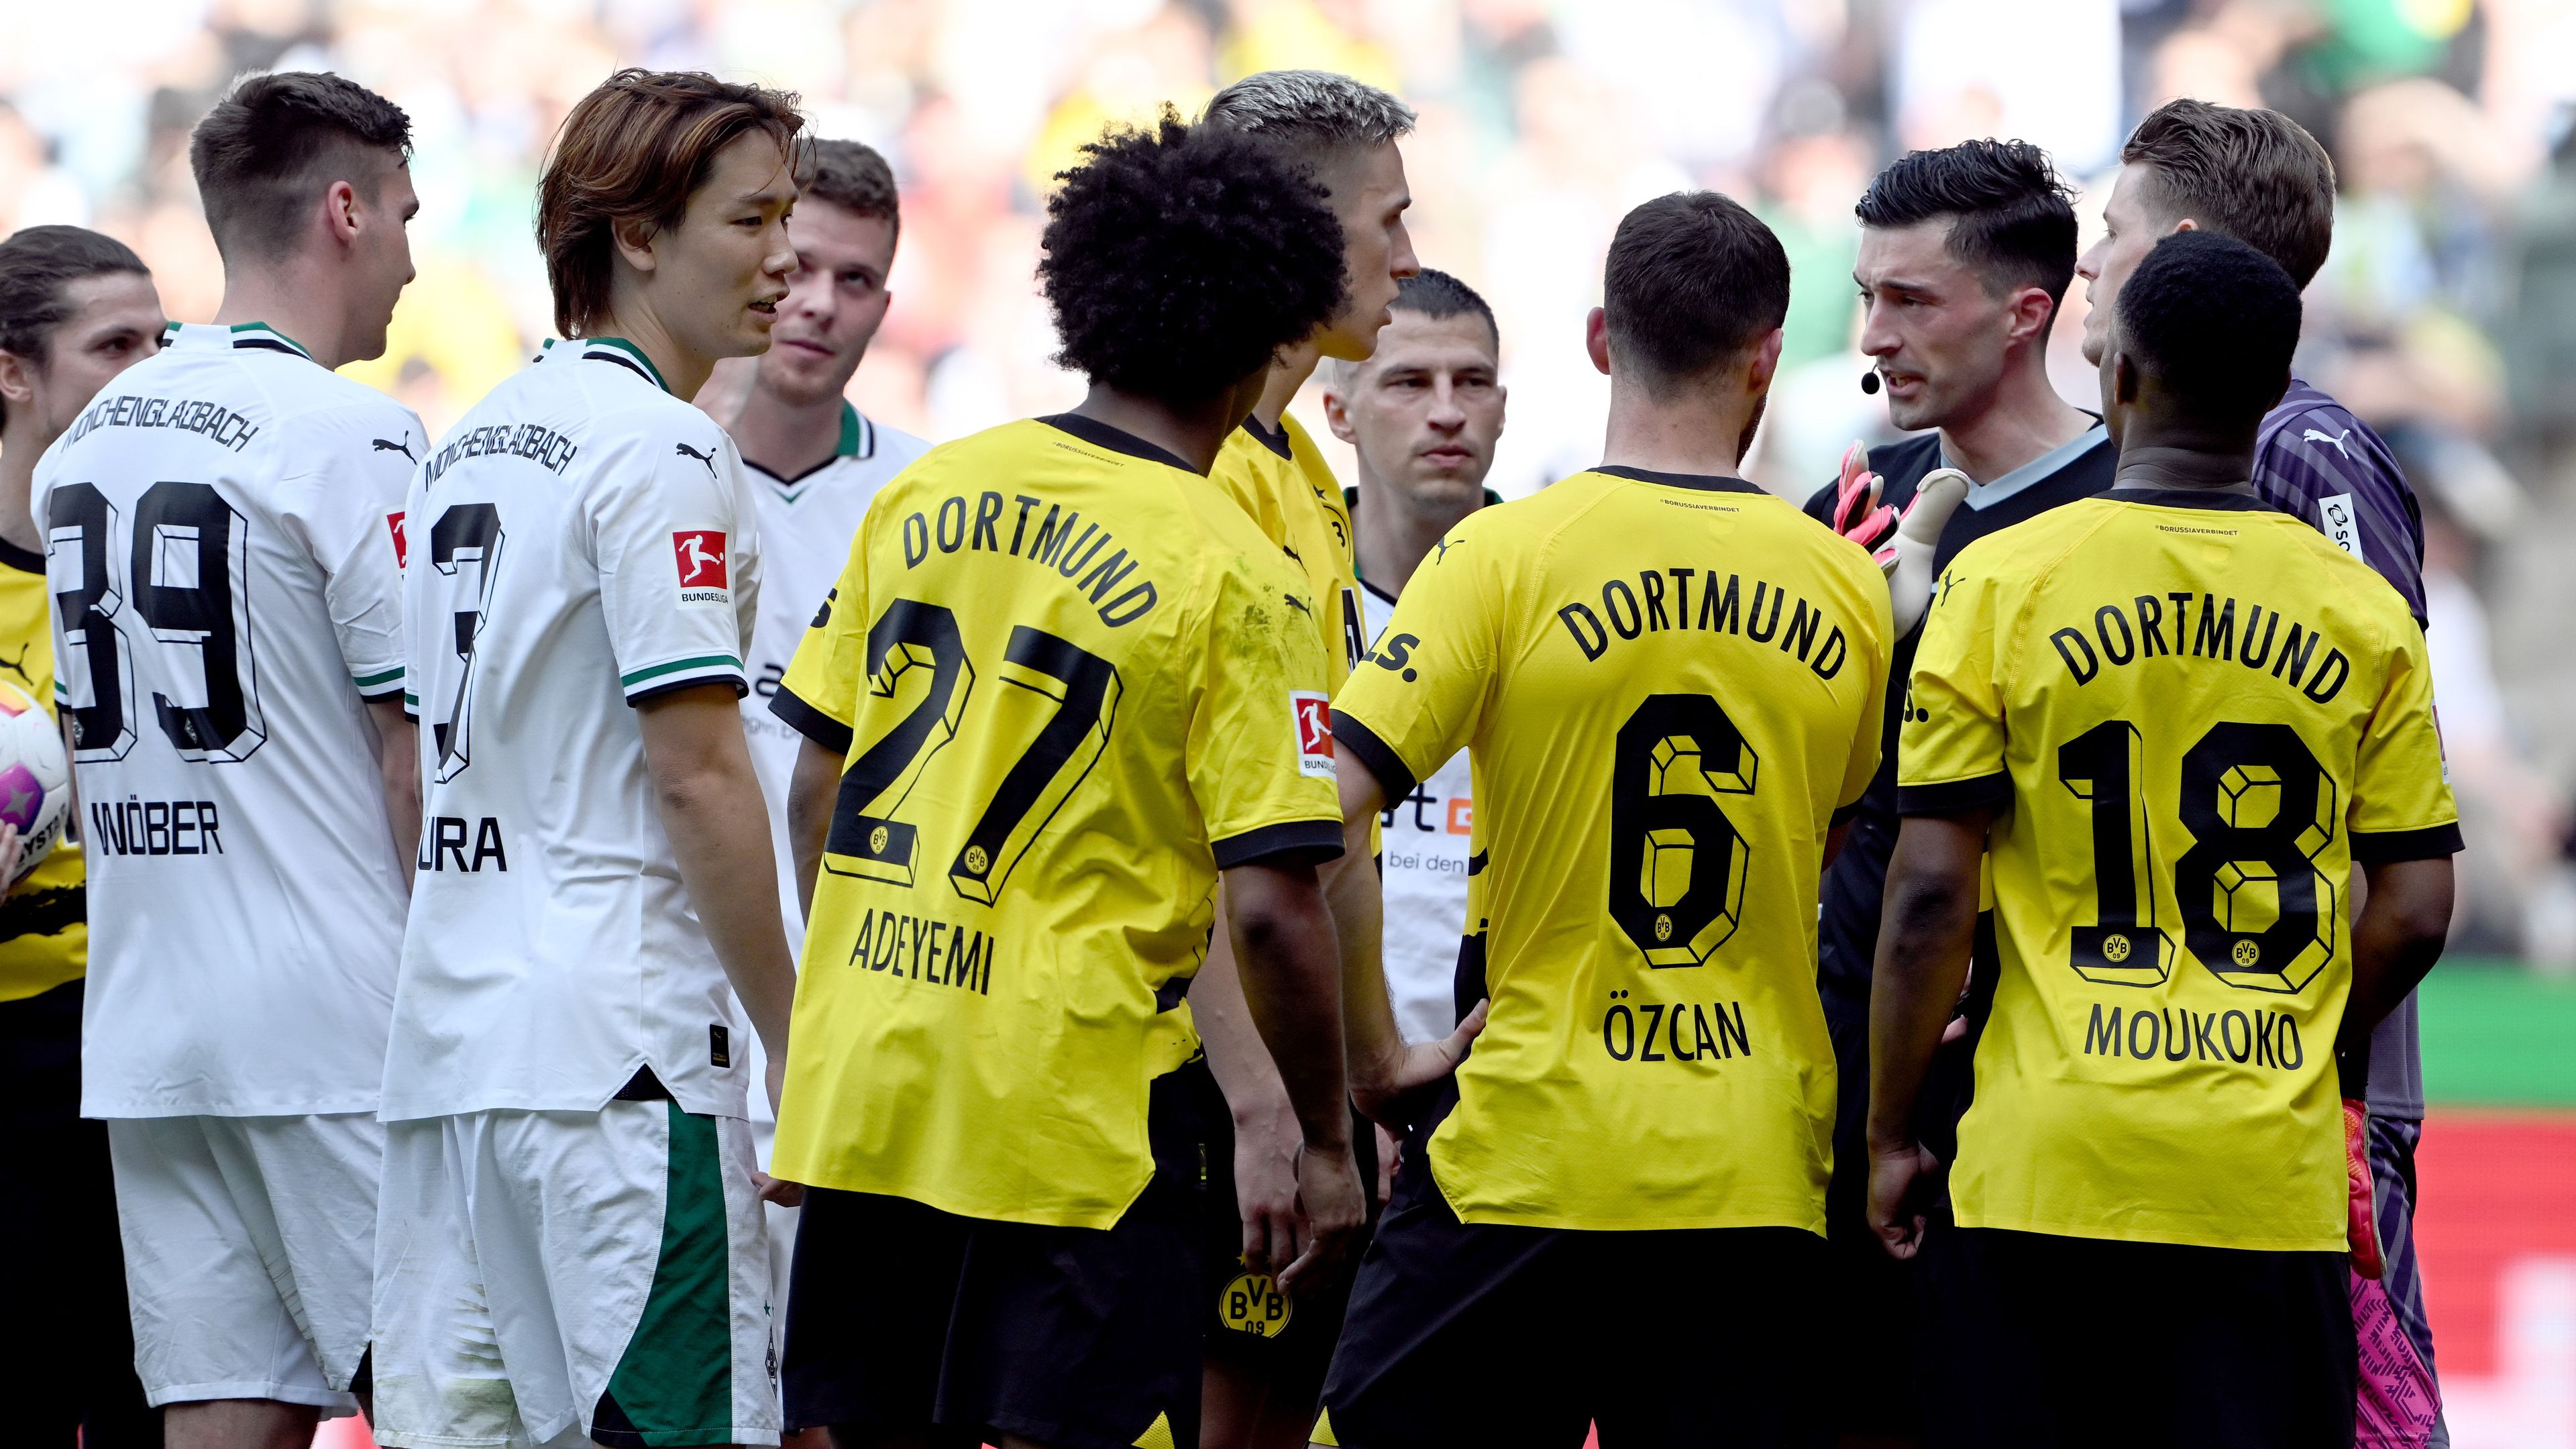 VAR-bohózat a Dortmund meccsén, ilyet is ritkán látni